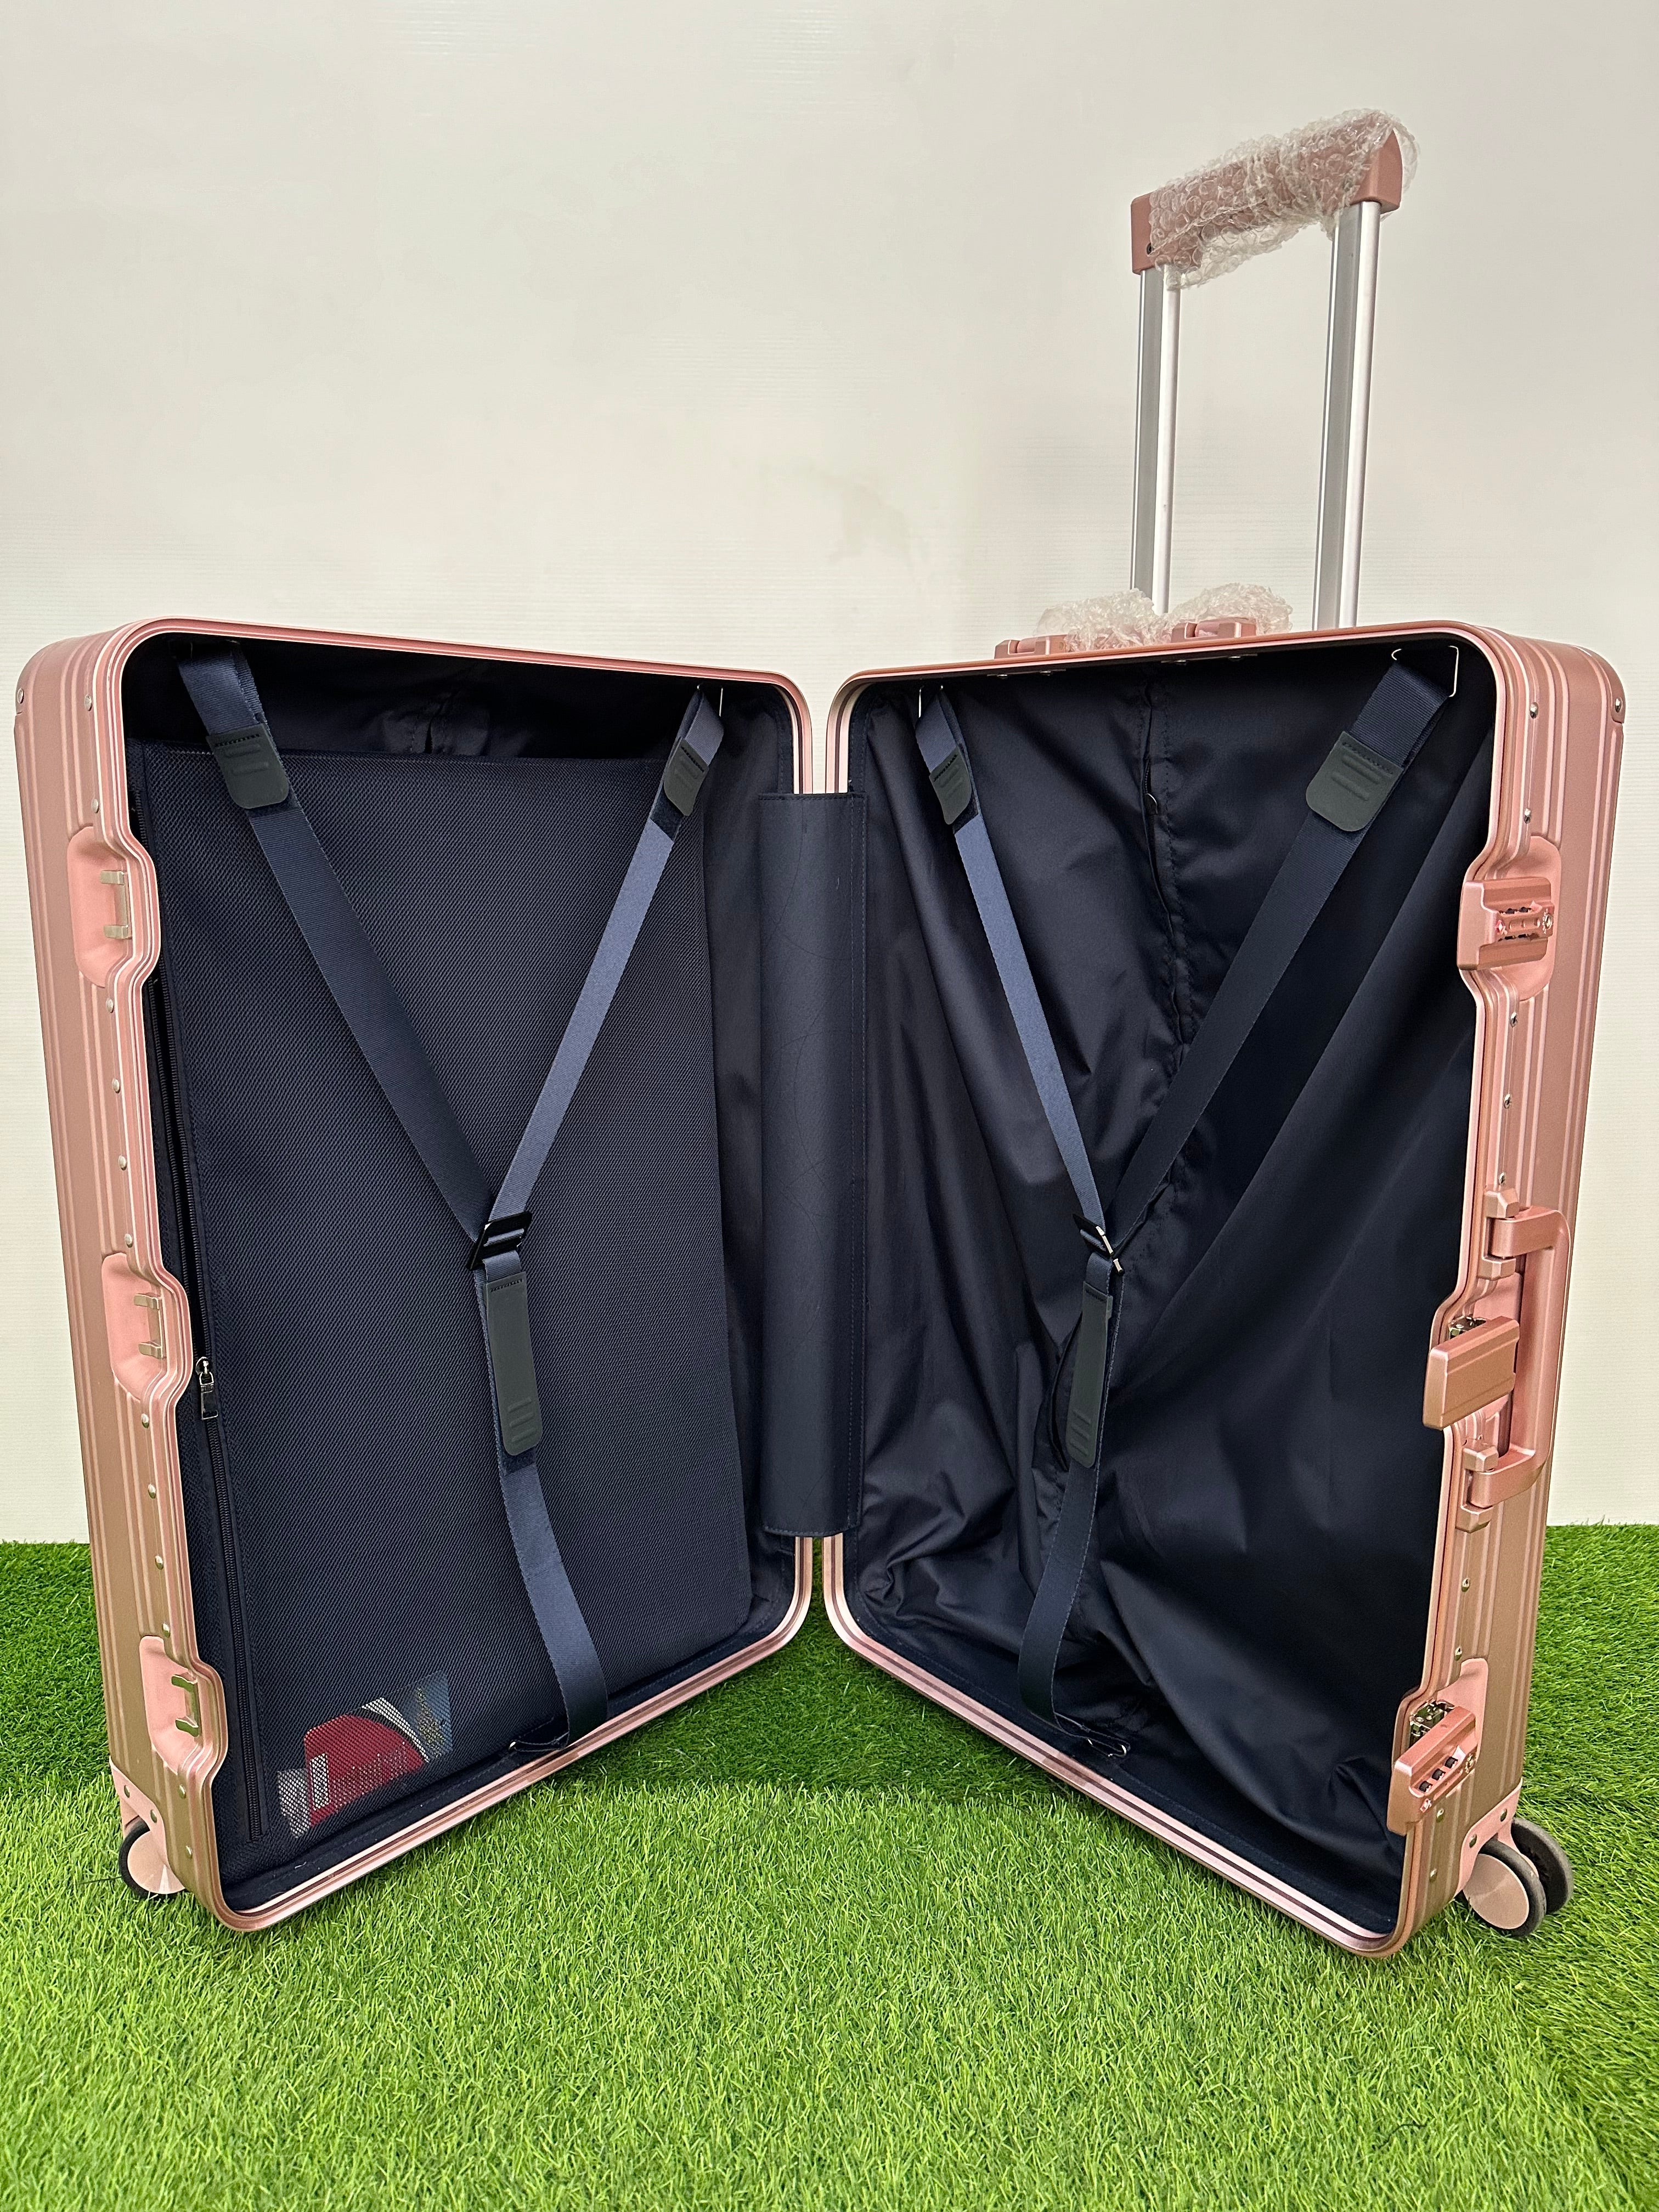 ALUMINIUM luggage 28” 4w trolley